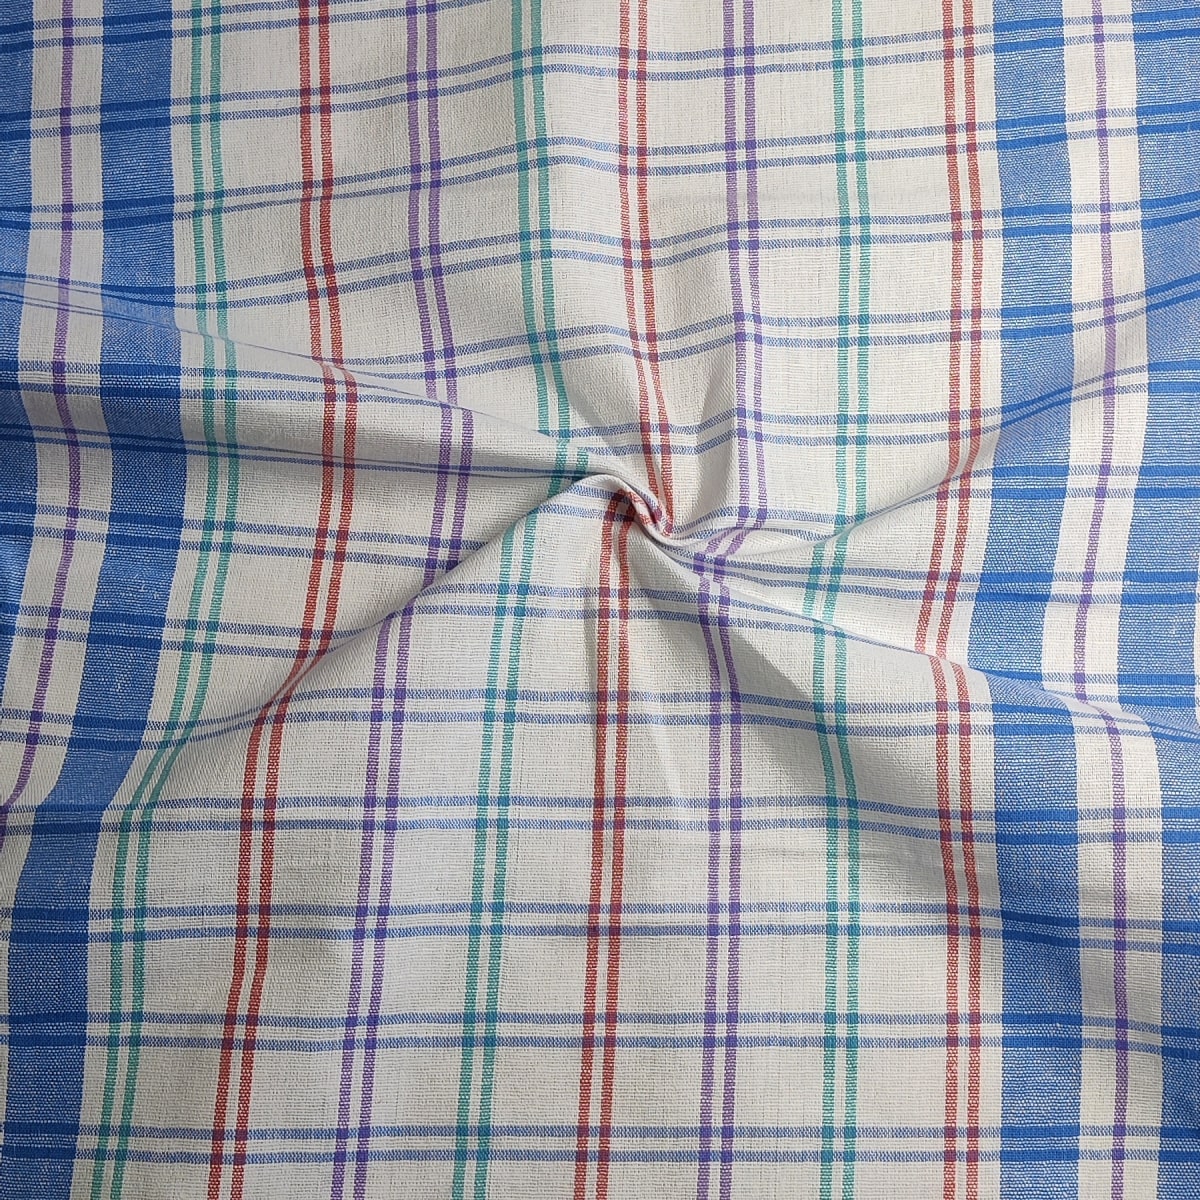 Dishcloth Fabric